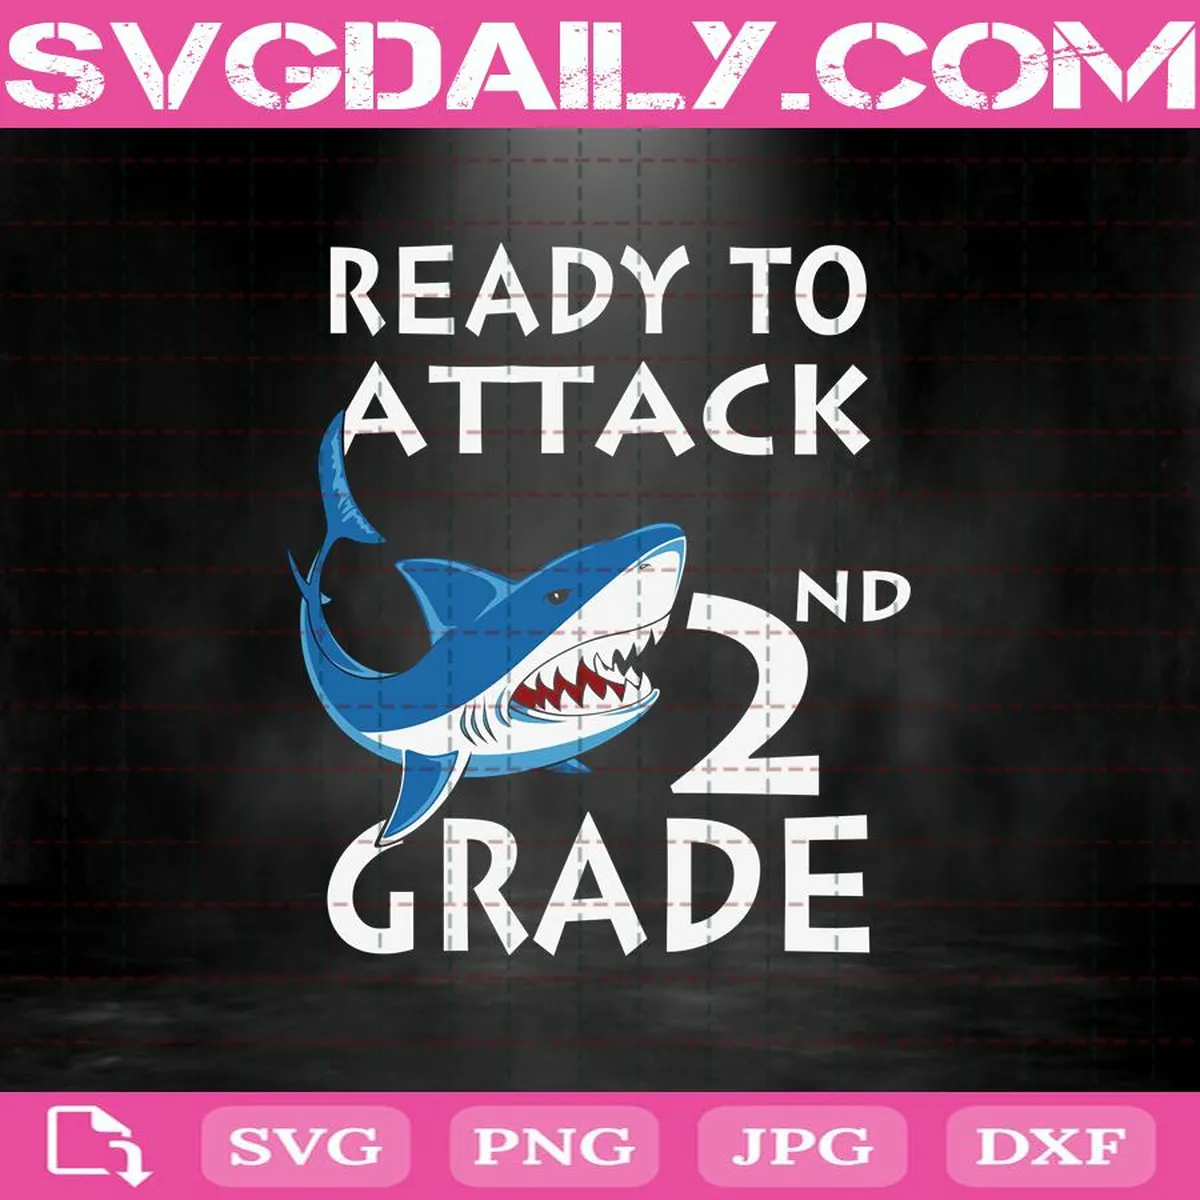 Shark Attack Svg, Shark Ready To Attack Svg, Ready To Attack 2nd Grade Svg, 2nd Grade Svg, Back To School Svg, School Svg